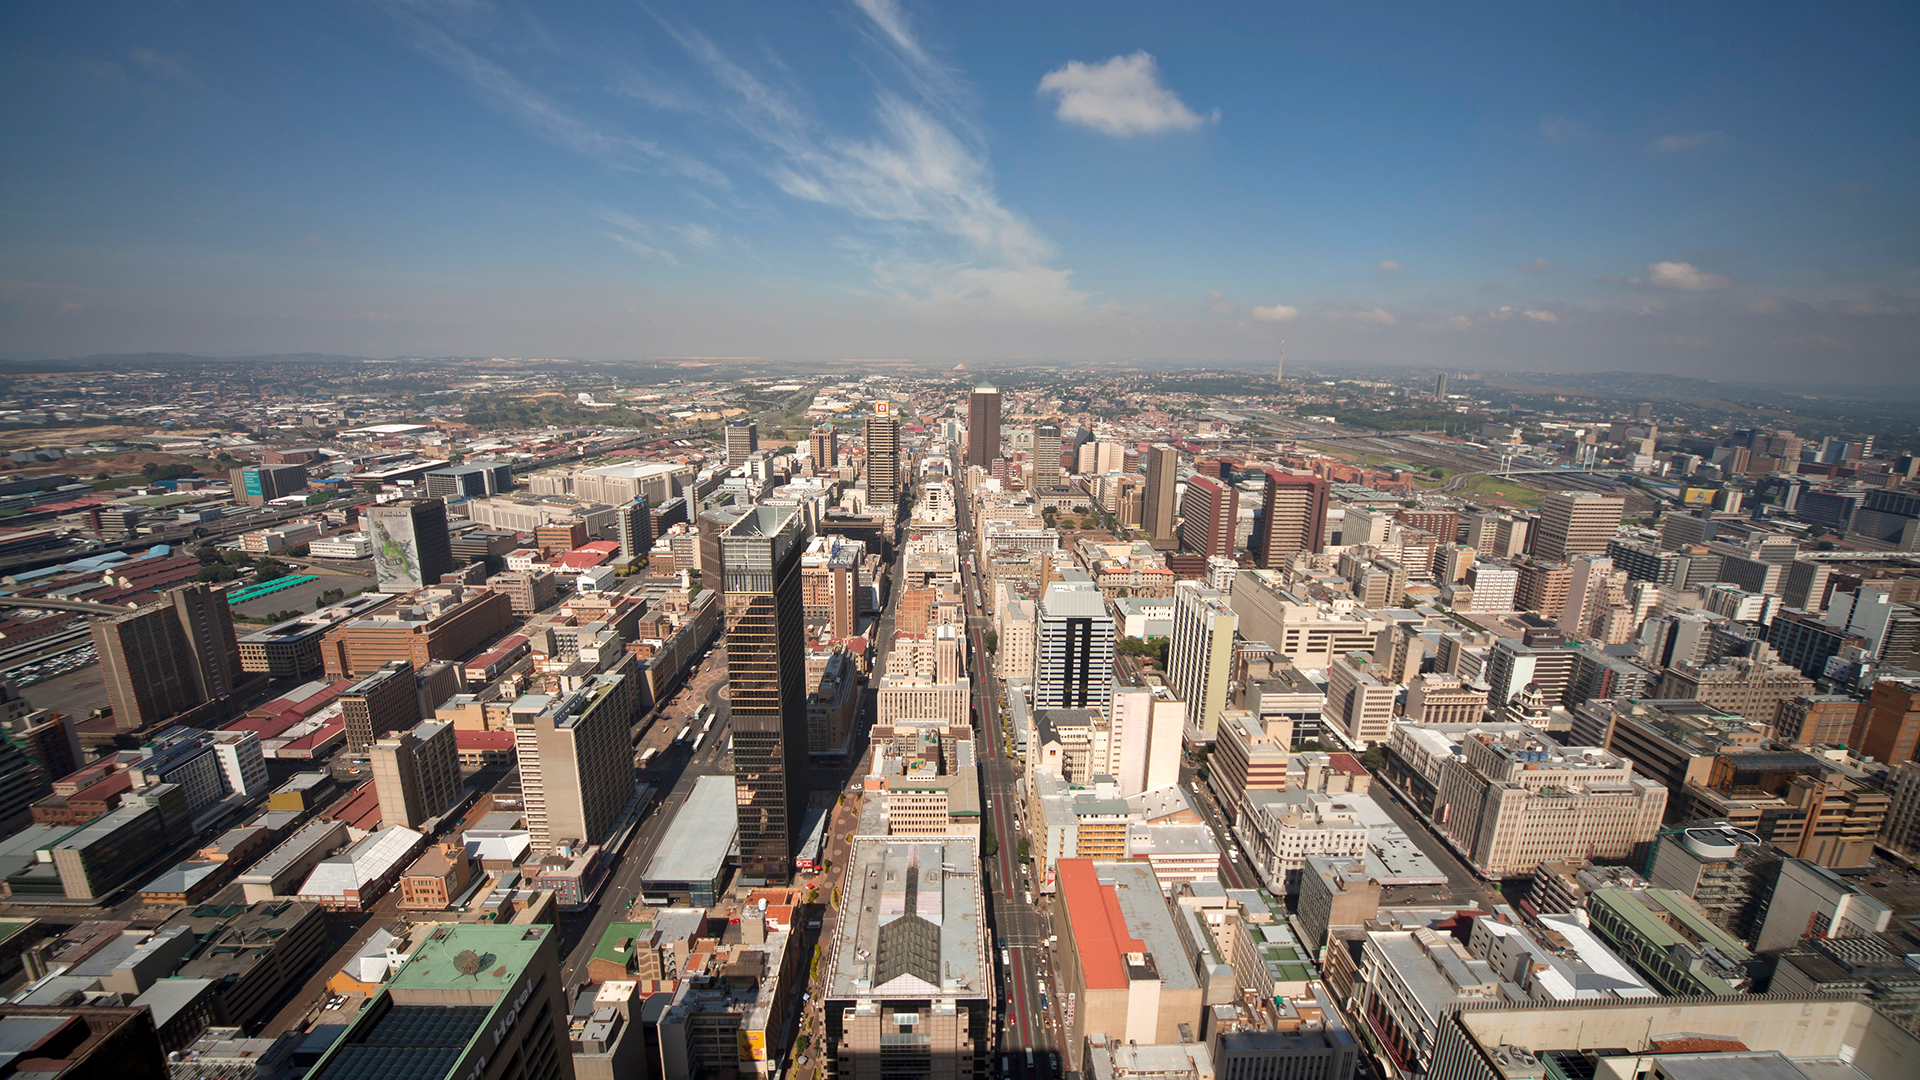 Stadtansicht von Johannesburg vom Carlton Center aus gesehen | picture alliance / Bildagentur-o